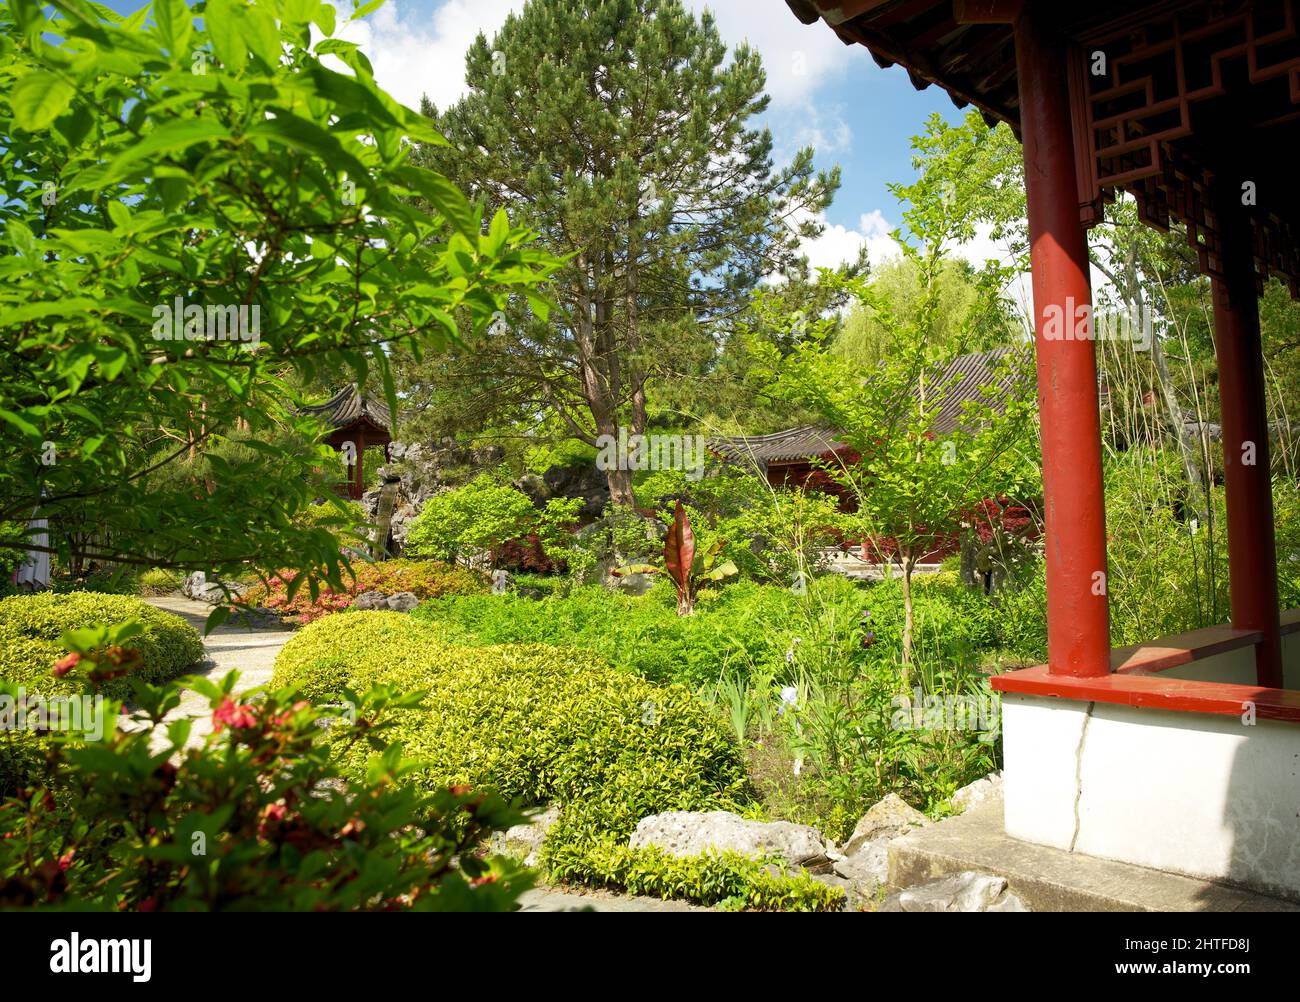 Chinesischer Garten im Hortus botanicus von Groningen im Frühsommer Stockfoto